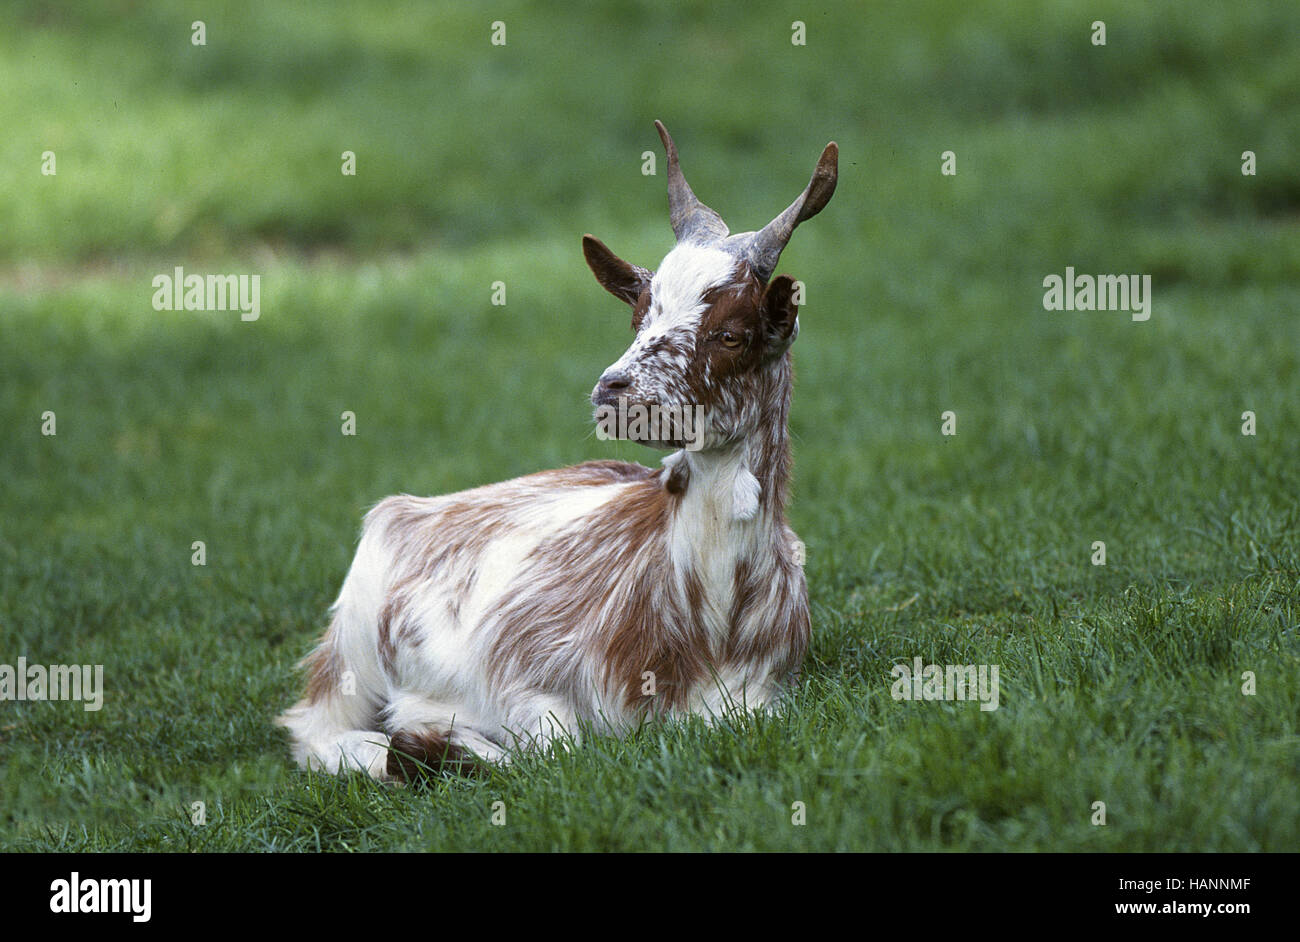 Girgentana Goat / Girgentana-Ziege Stock Photo